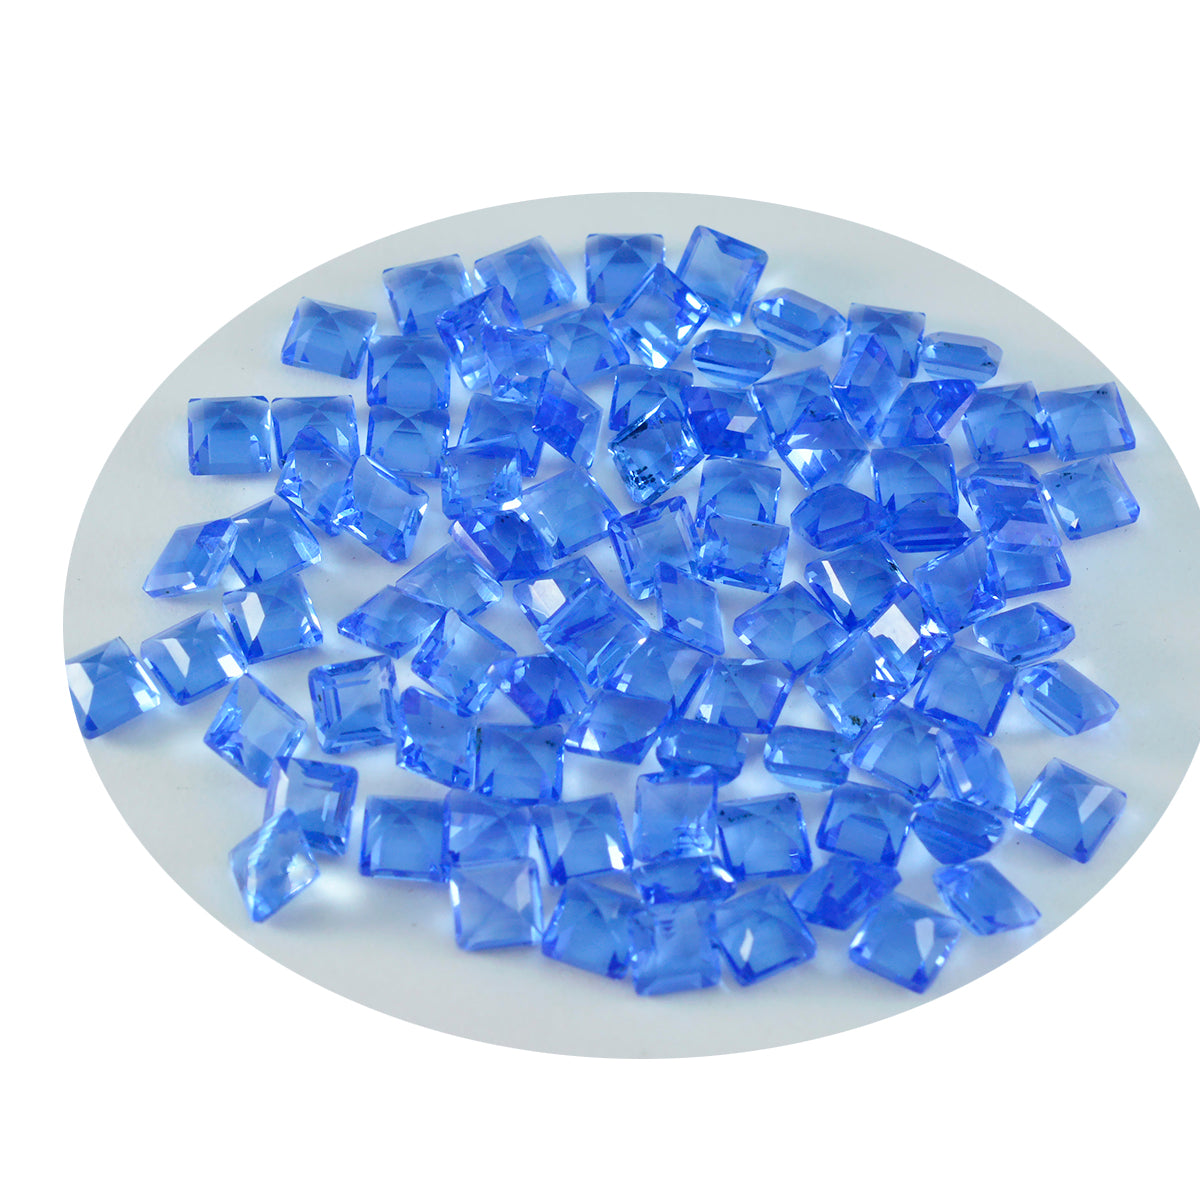 riyogems 1pc ブルー サファイア CZ ファセット 3x3 mm 正方形 a+1 品質ルース宝石